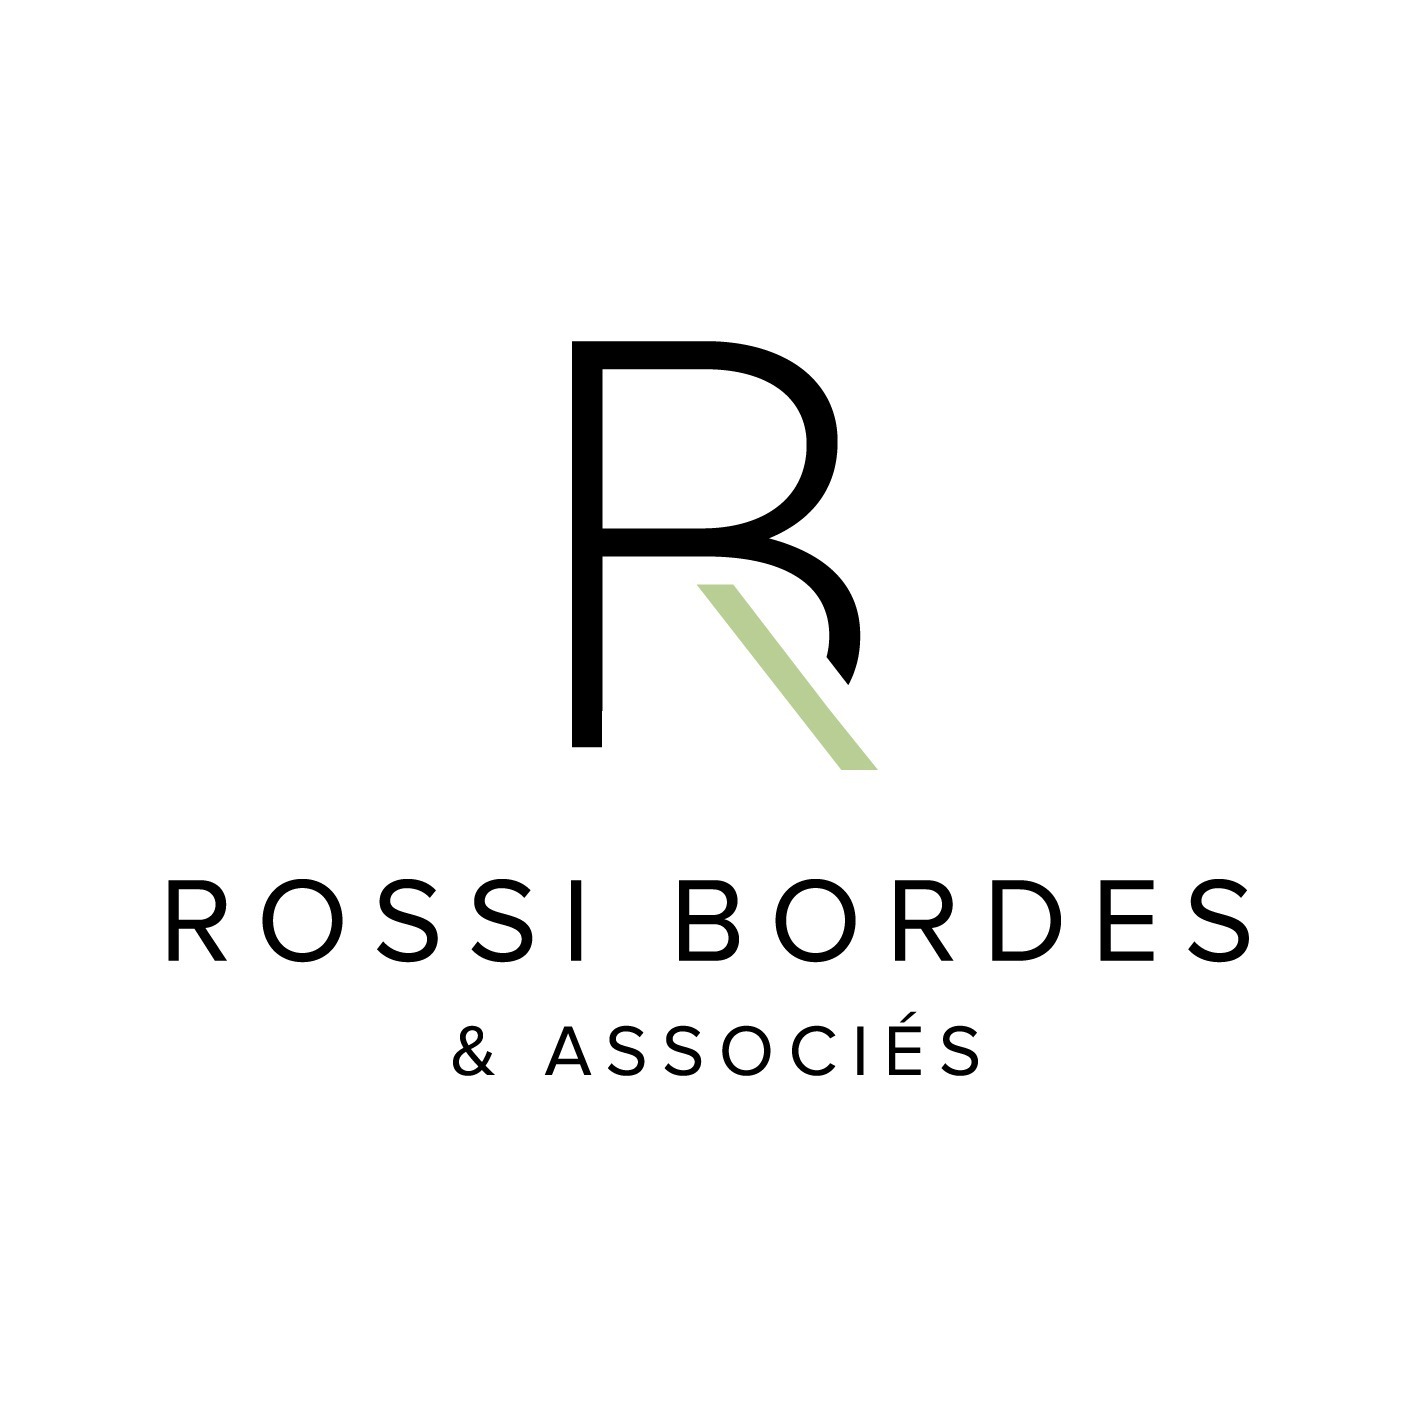 Rossi Bordes & Associés